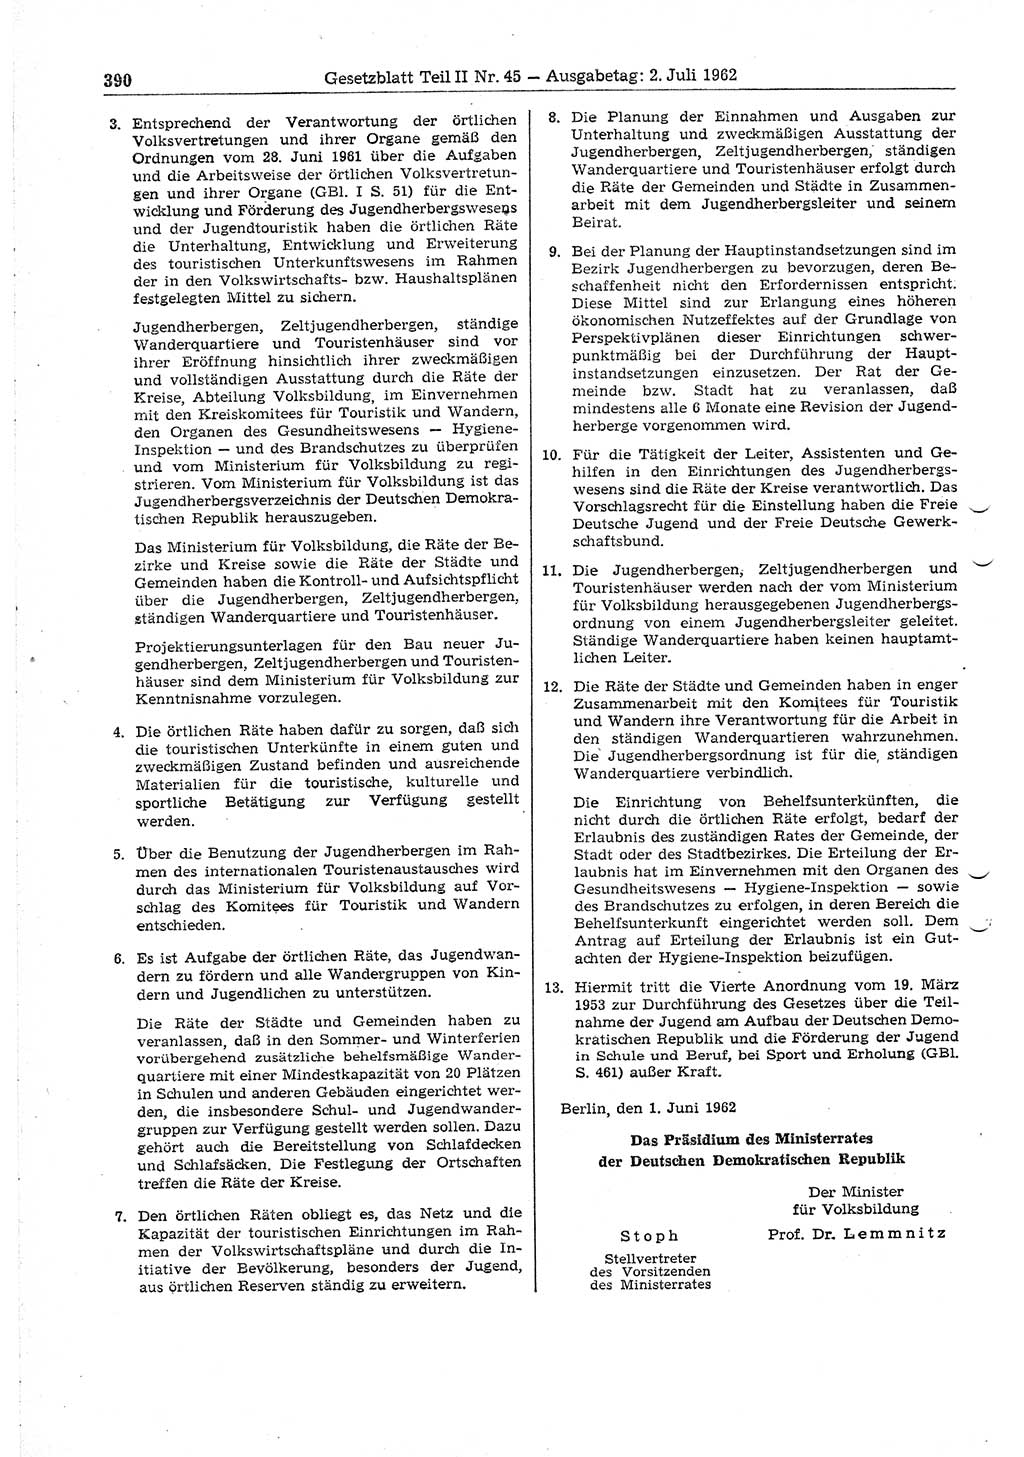 Gesetzblatt (GBl.) der Deutschen Demokratischen Republik (DDR) Teil ⅠⅠ 1962, Seite 390 (GBl. DDR ⅠⅠ 1962, S. 390)